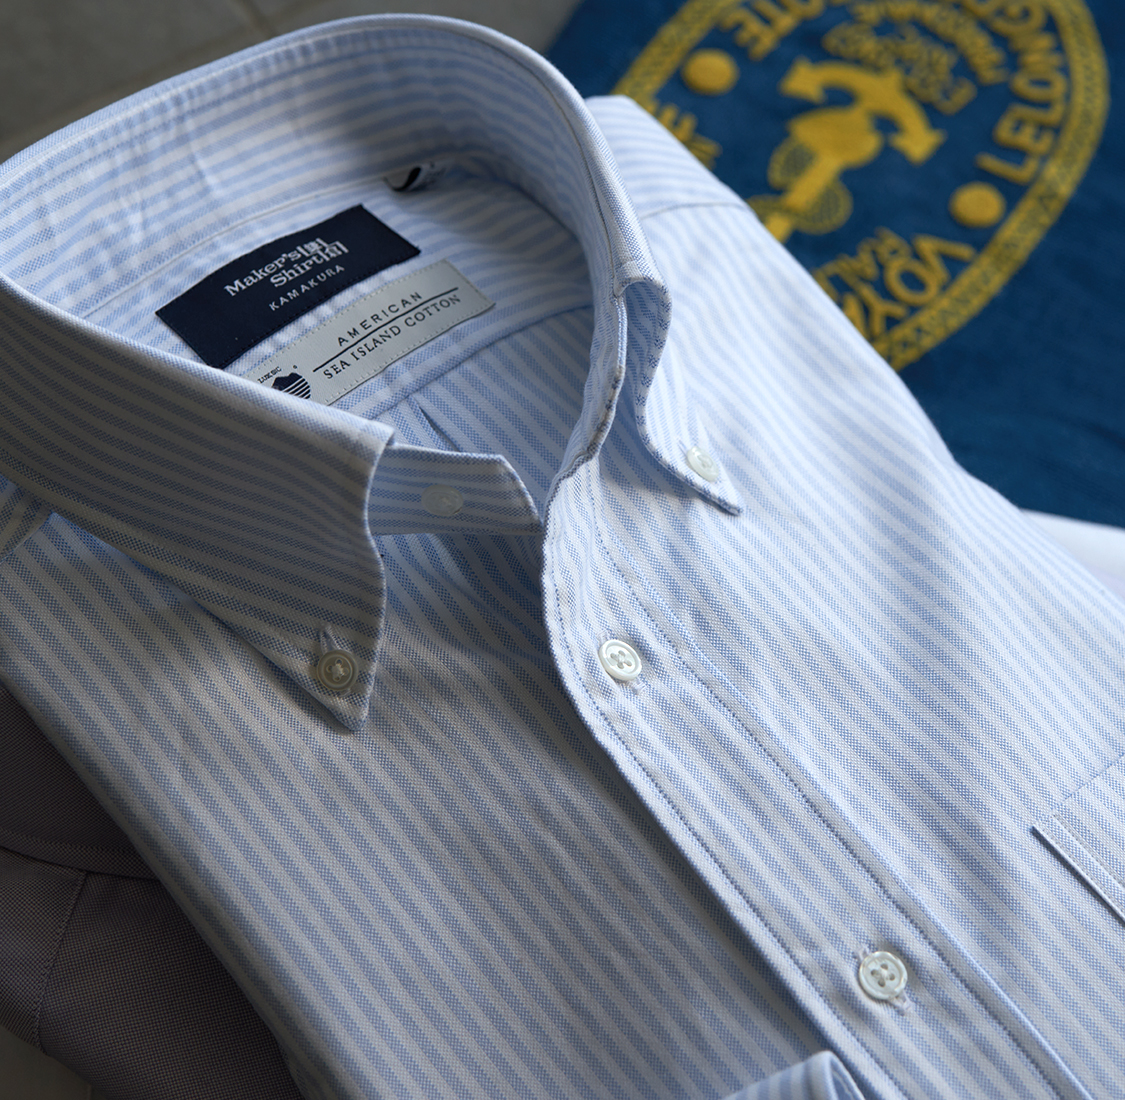 アメリカンシーアイランドコットン | メーカーズシャツ鎌倉 公式通販